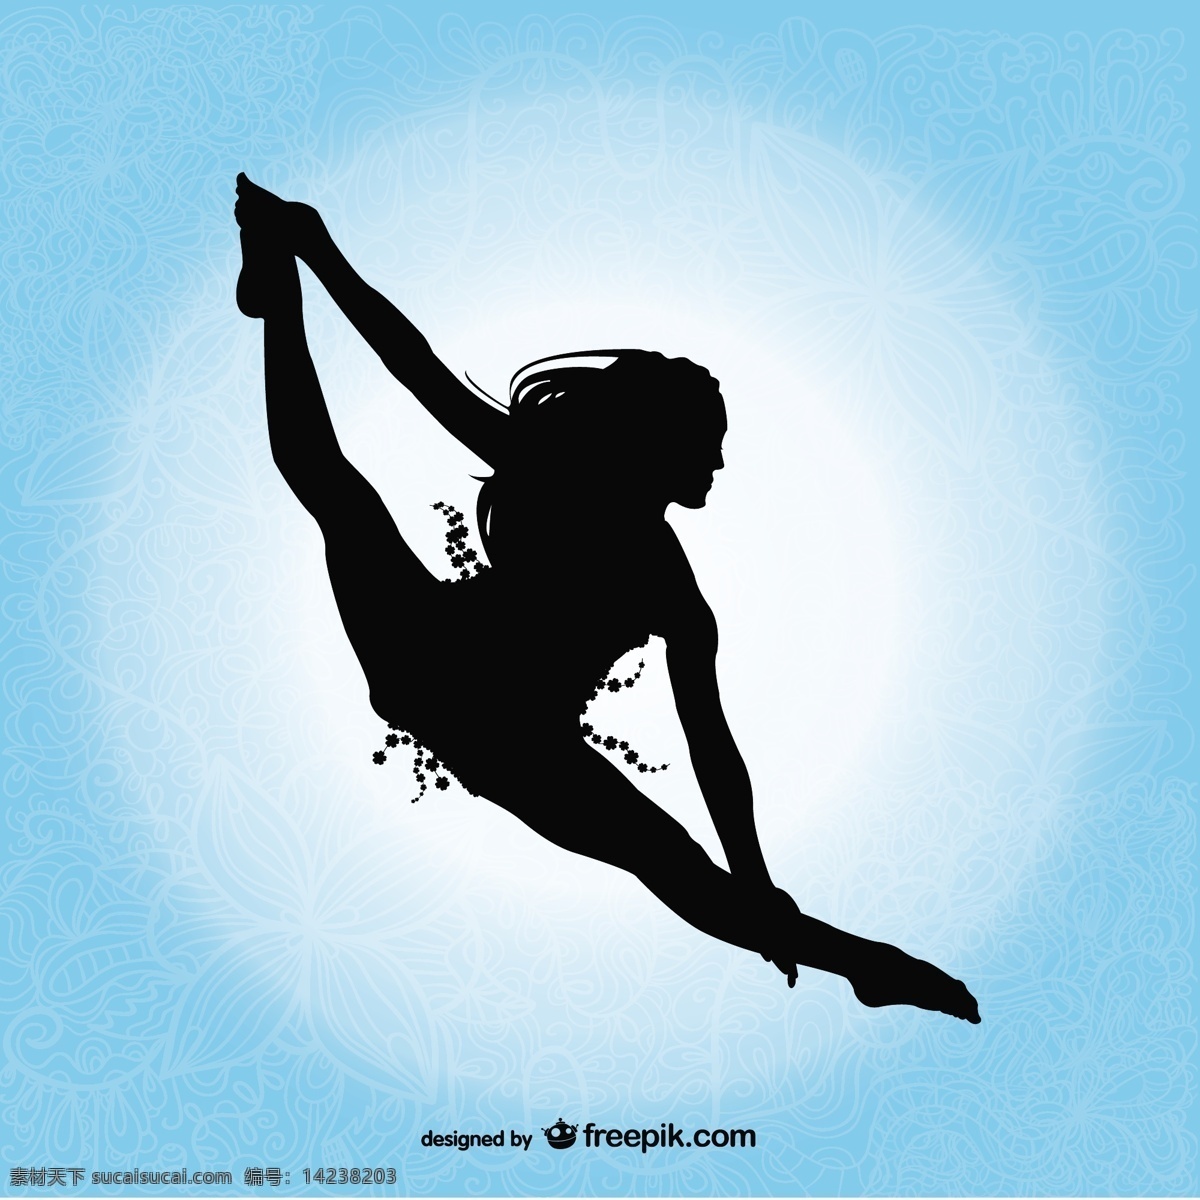 专业 舞者 剪影 摘要设计 舞蹈 美术 平面 轮廓 人 平面设计元素 女士 插图 设计元素 图形 跳舞 女人的轮廓 女的 专业的 抽象的设计 青色 天蓝色